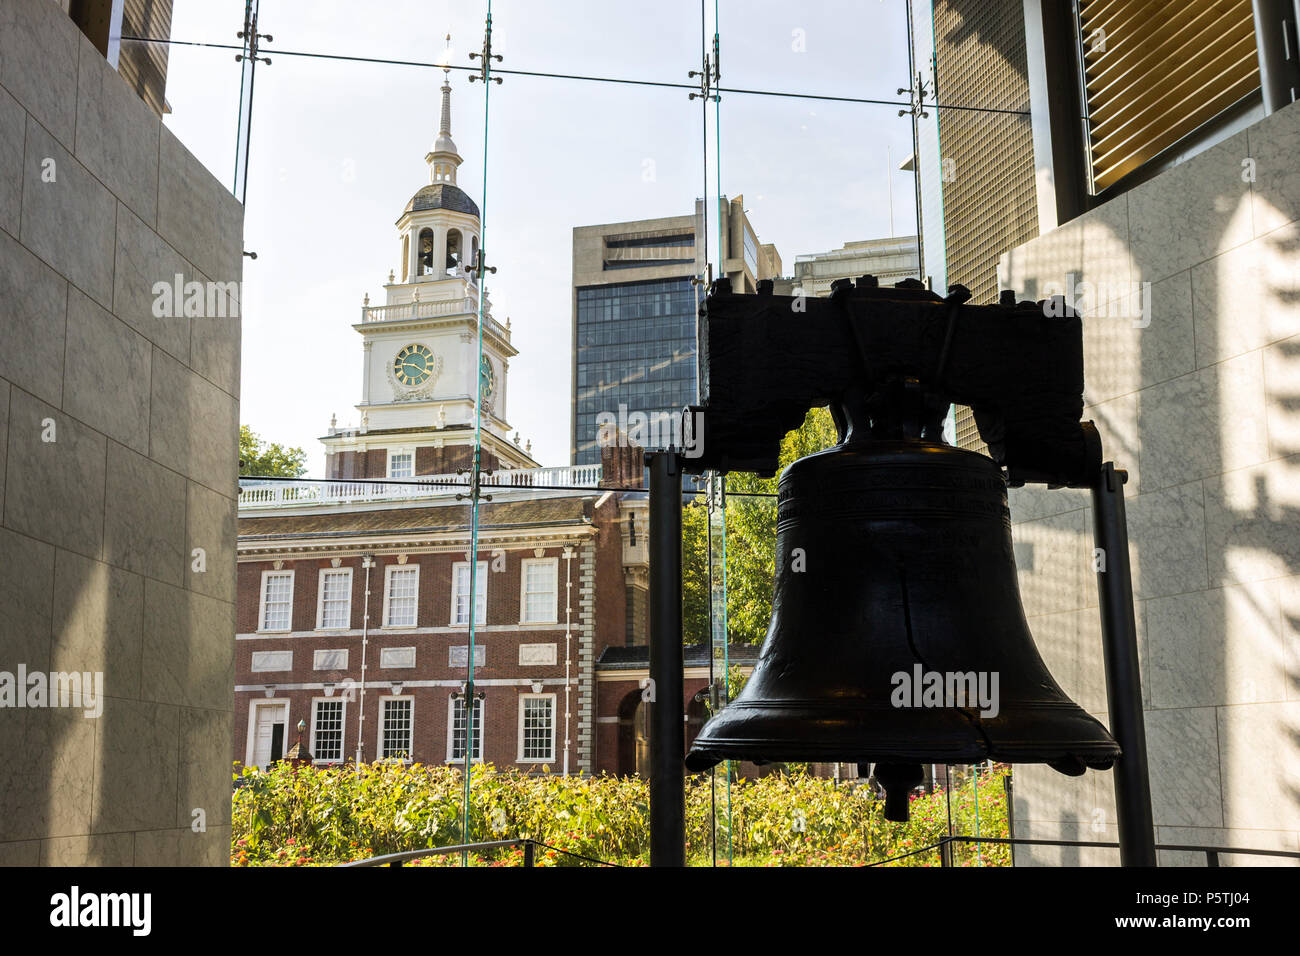 Philadelphia, Pennsylvania. La Liberty Bell, un simbolo iconico di indipendenza americana, con la sala dell'indipendenza in background Foto Stock